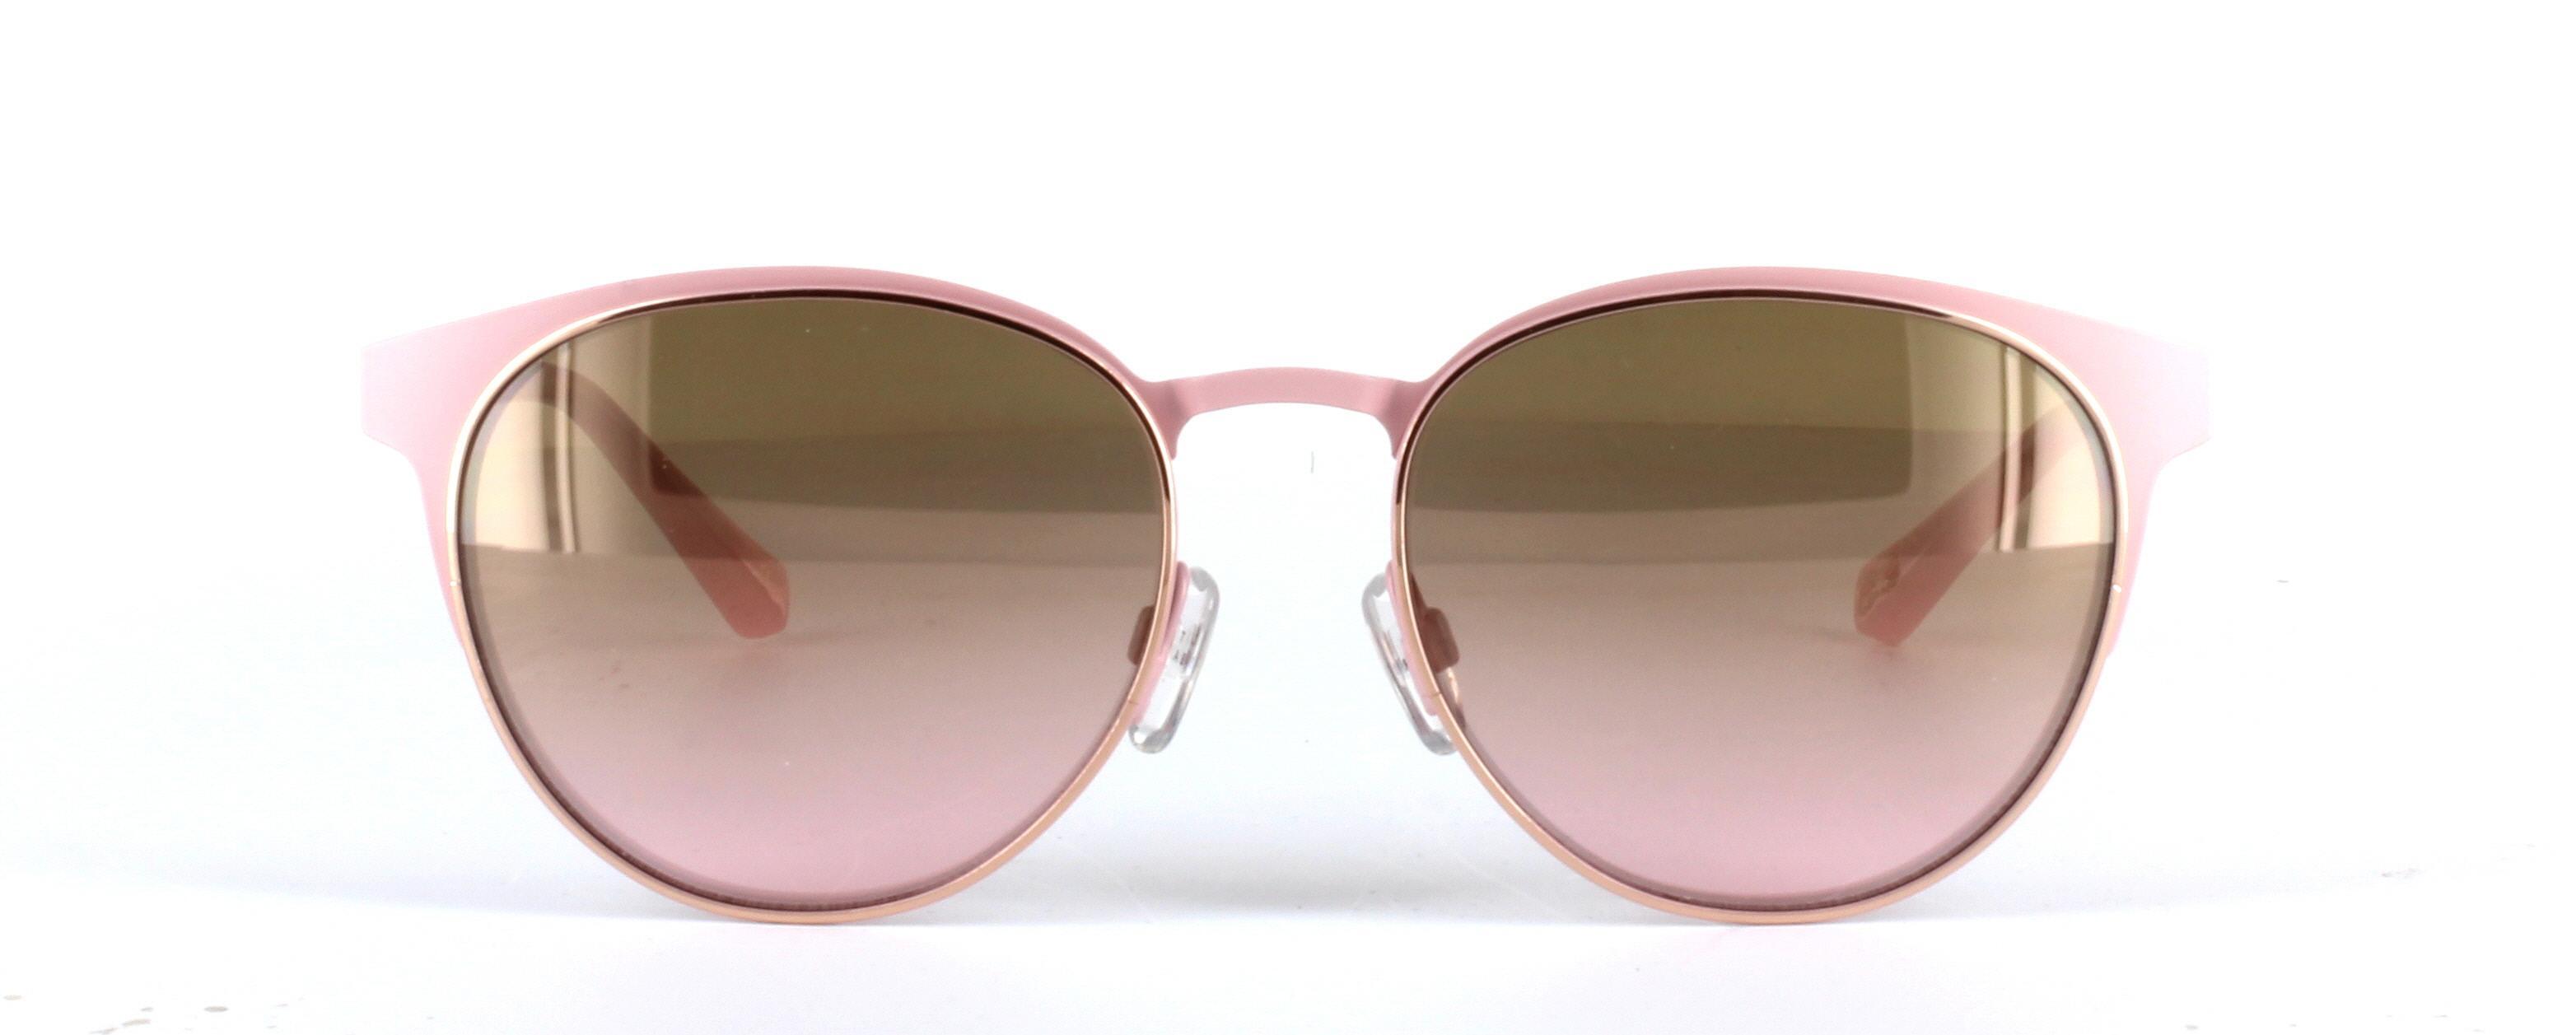 Daila Pink Full Rim Metal Sunglasses - Image View 5